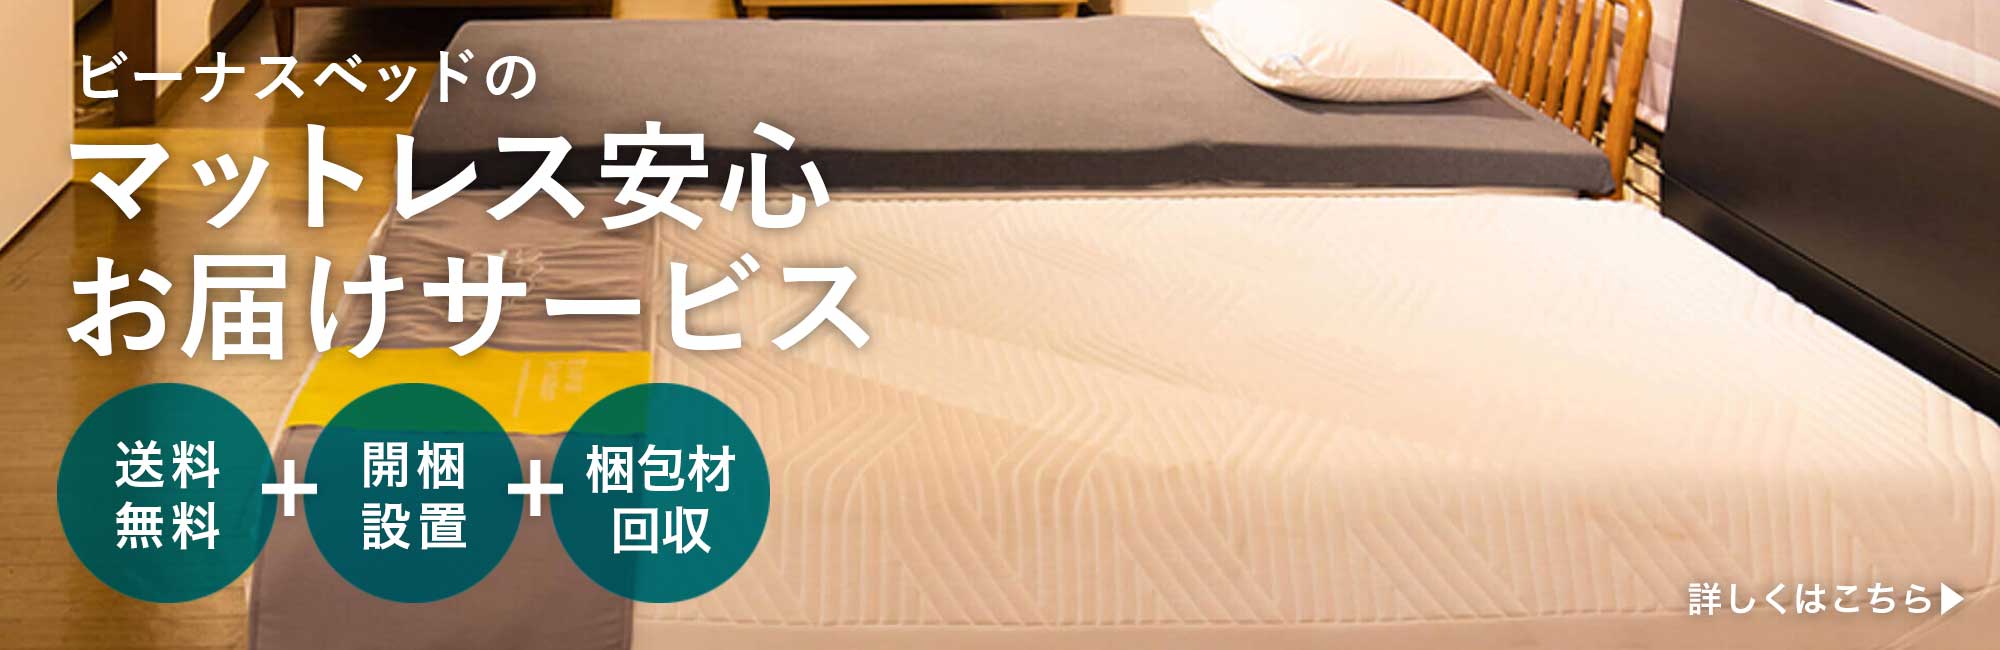 TEMPUR(テンピュール）のマットレス一覧 | 日本最大級のベッド専門店 